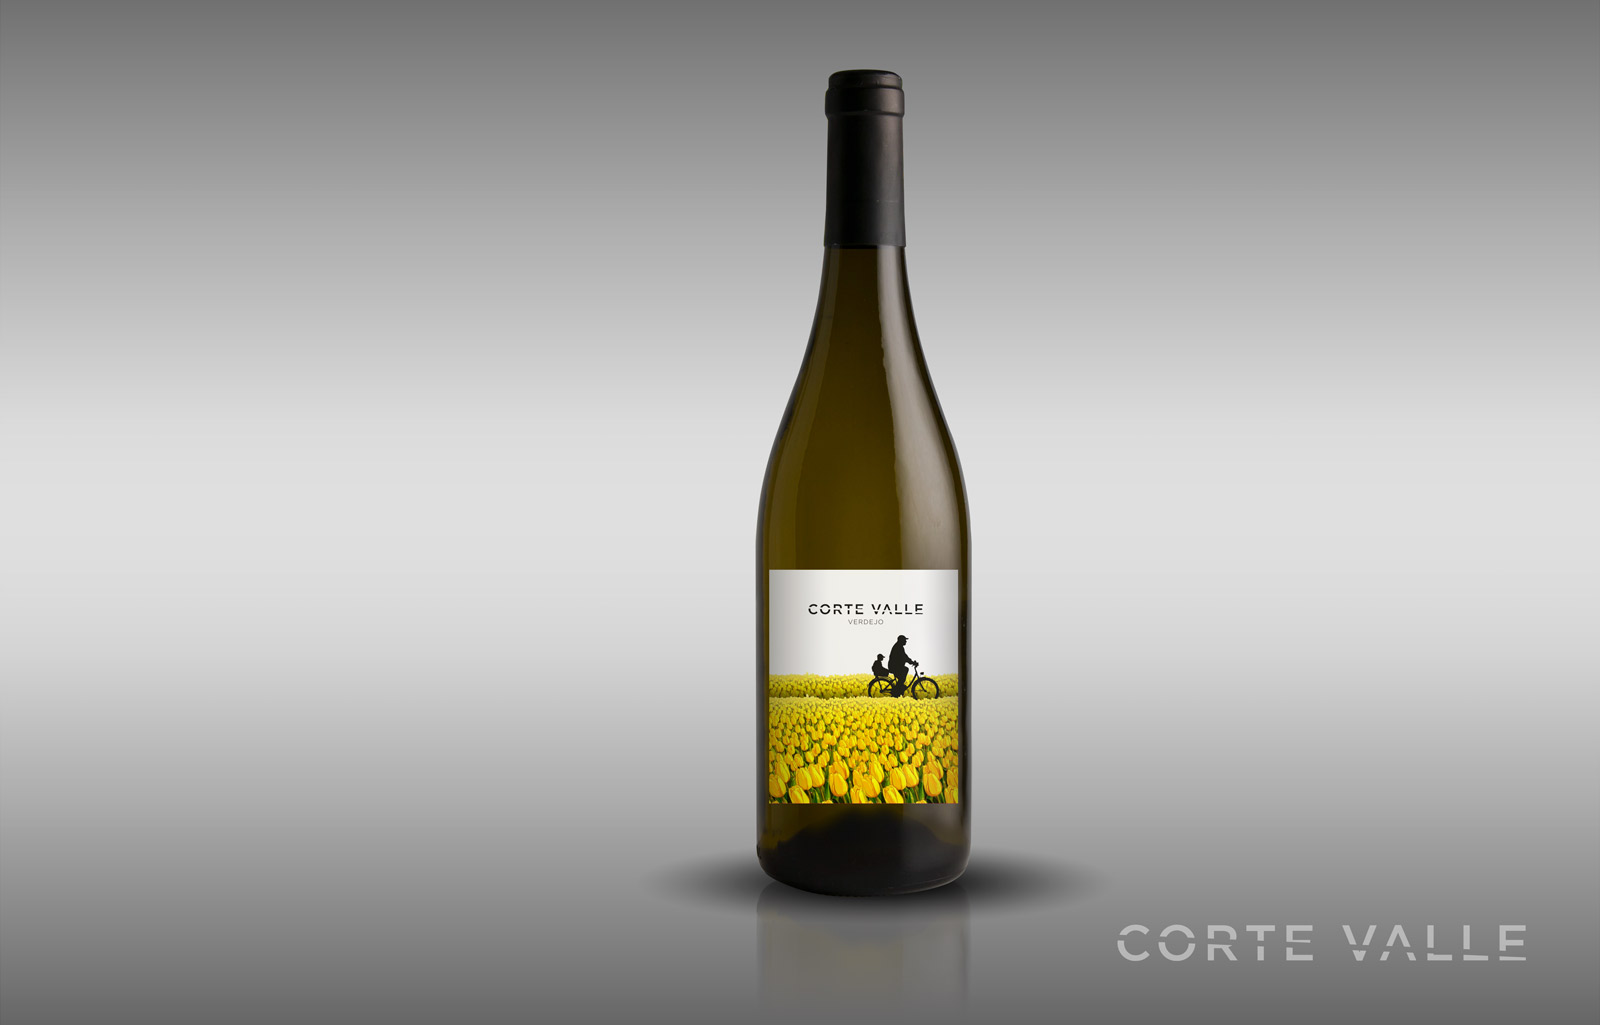 Diseño gráfico y creativo de etiquetas formato sleeve y packaging de vino para CORTEVALLE